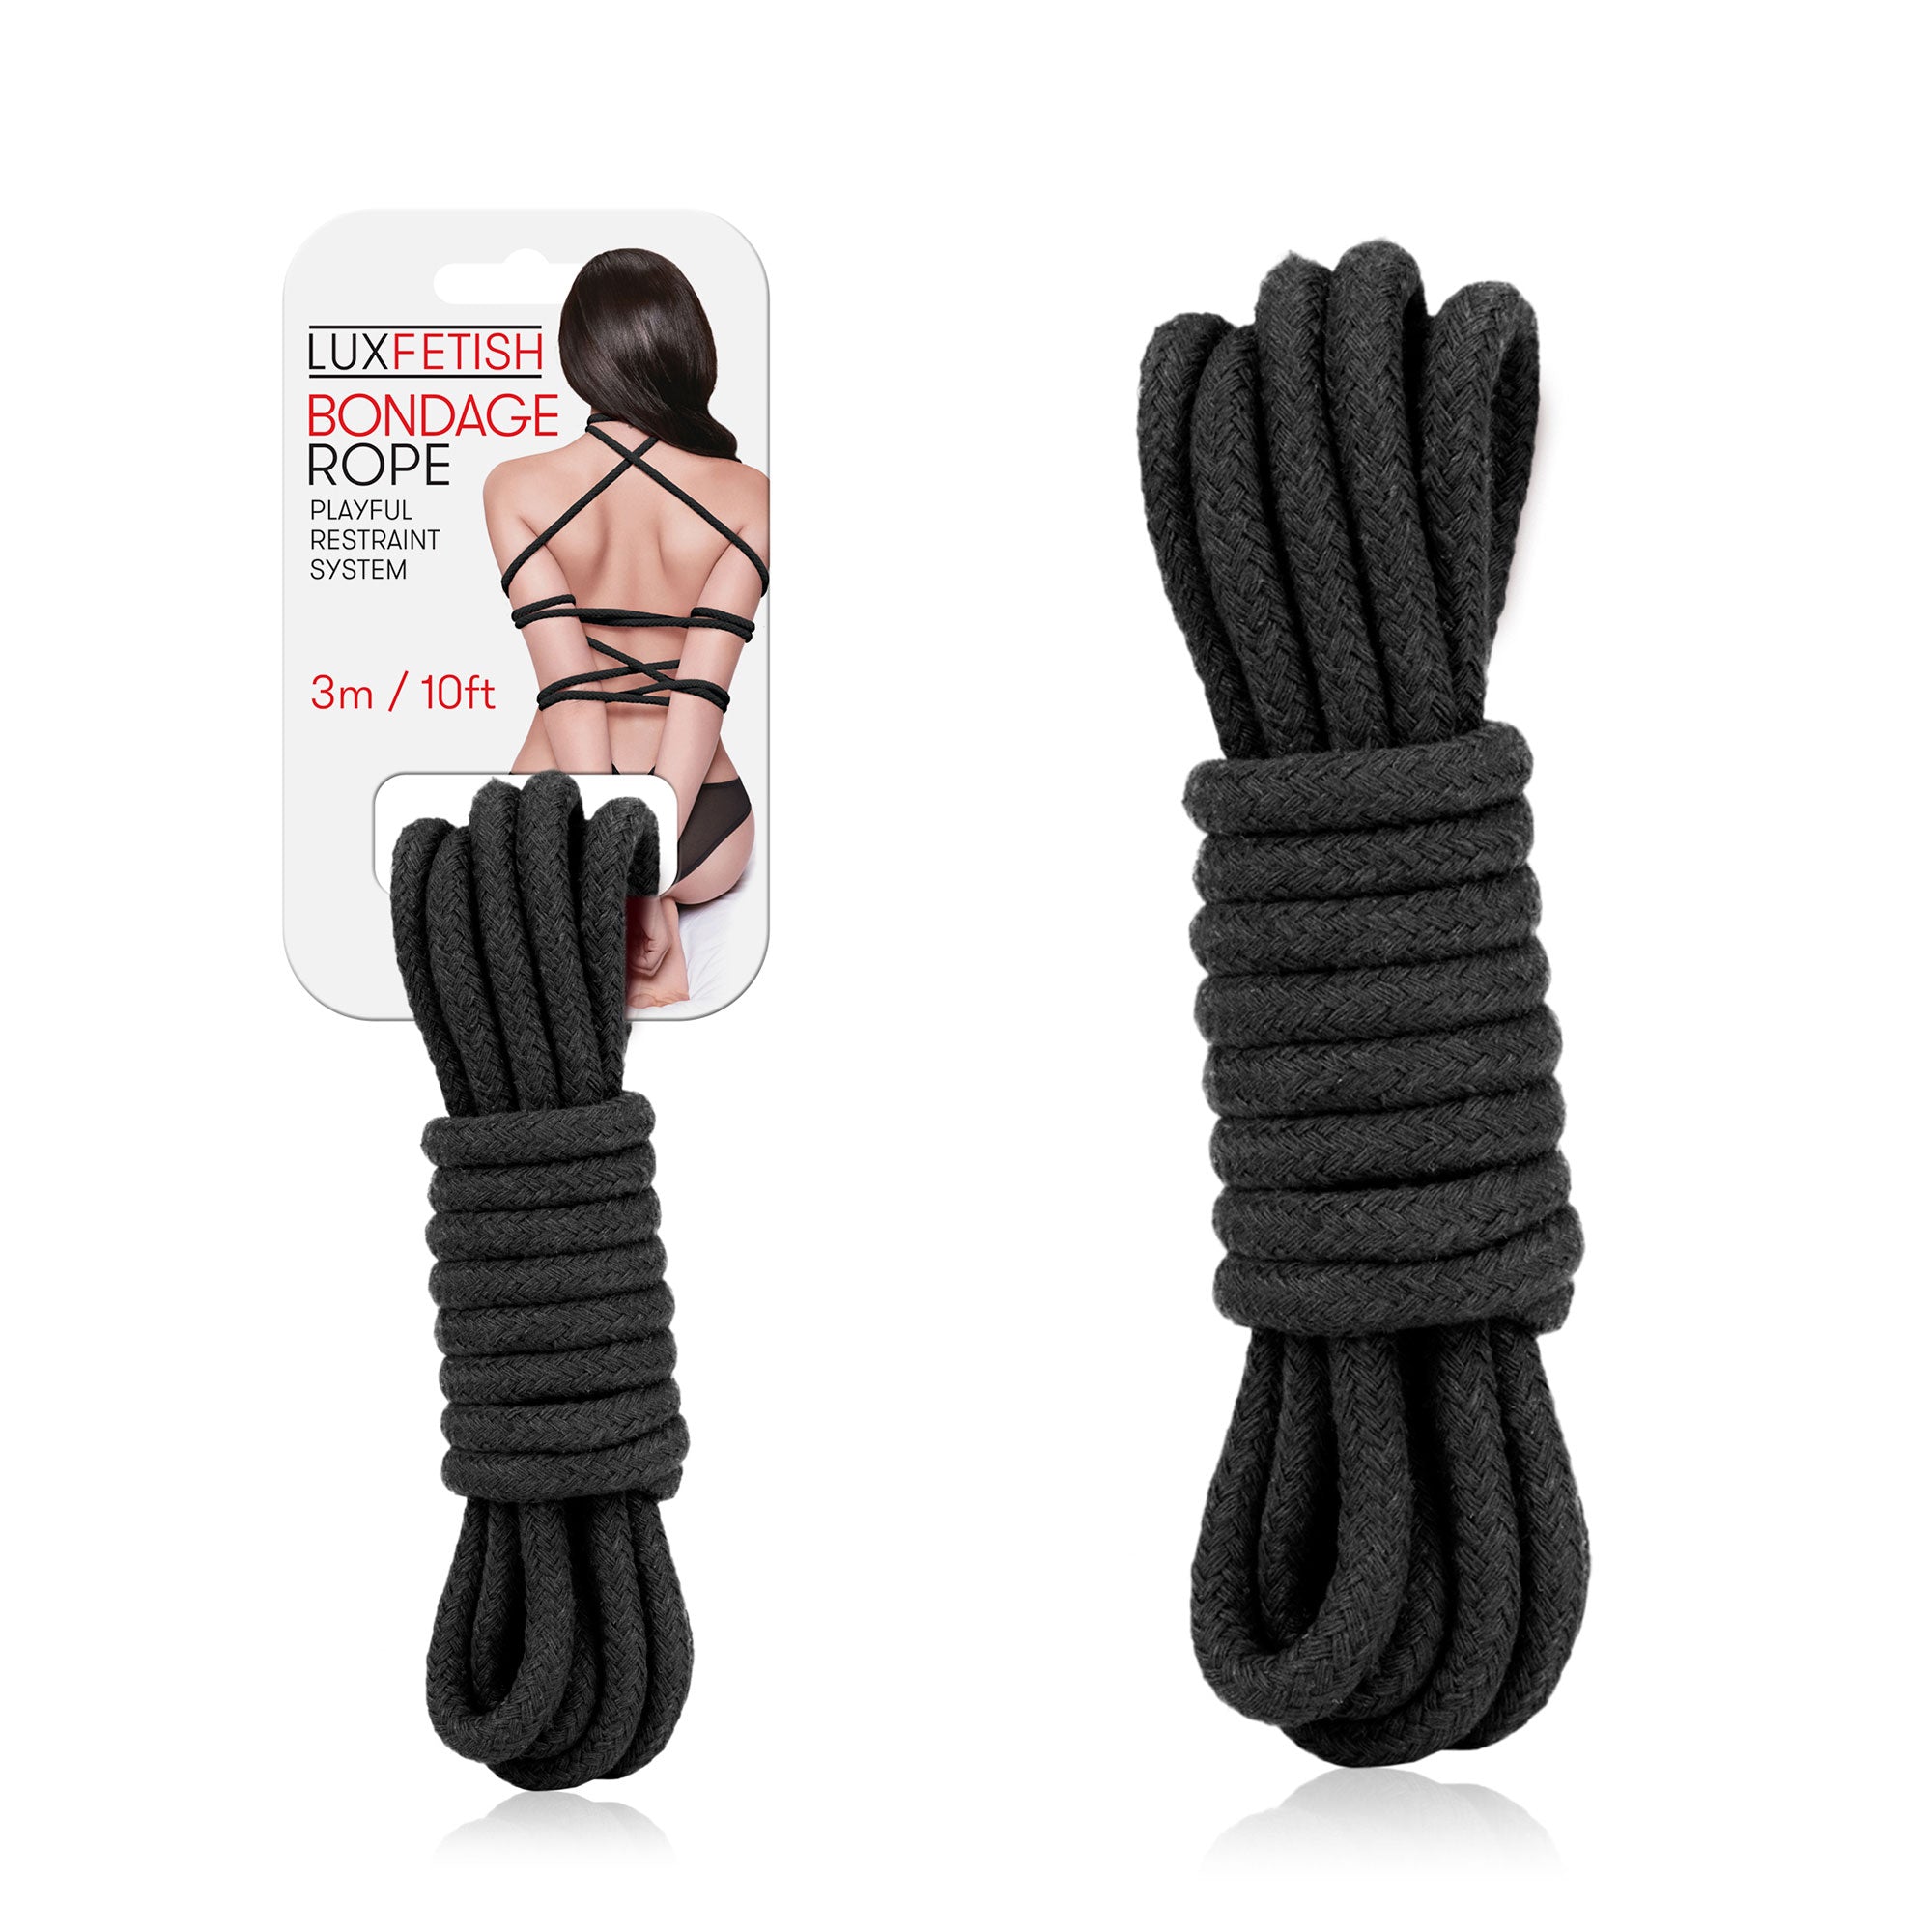 Packaging of Lux Fetish Bondage Rope (3m / 10ft) - Black at glastoy.com